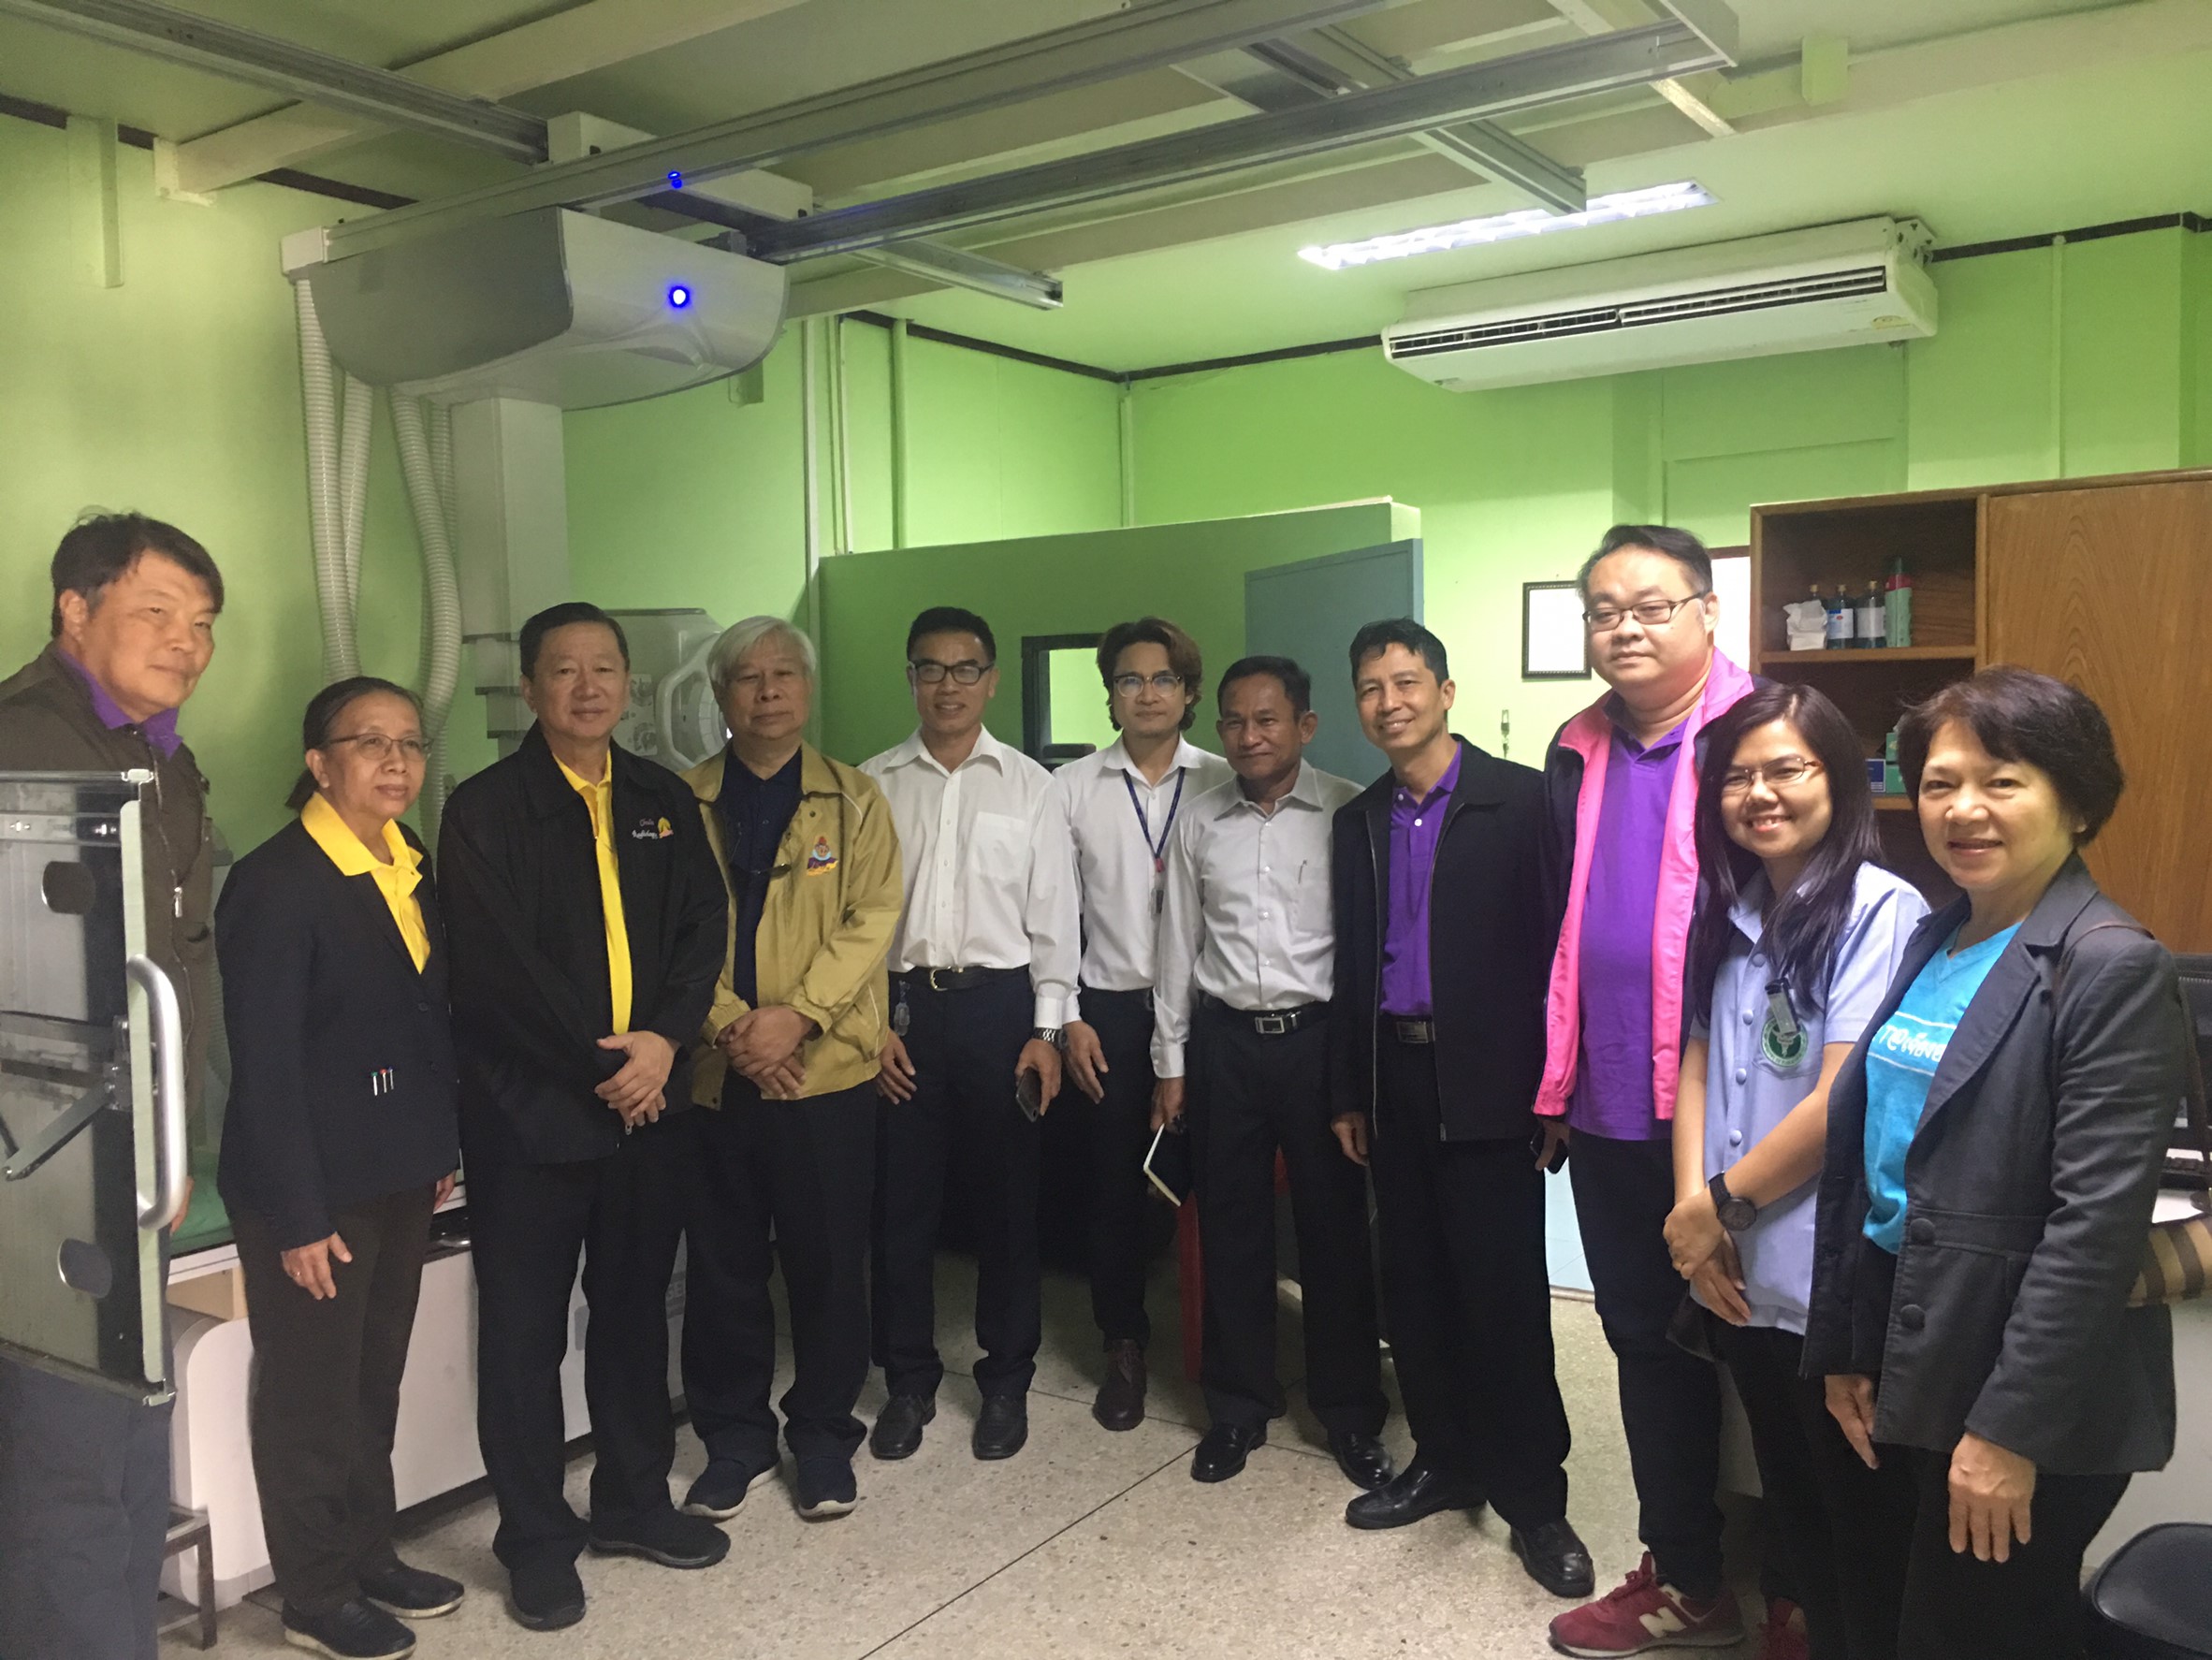 ประชุมวิชาการร่วมกับรังสีการแพทย์แห่งประเทศไทย ครั้งที่17 27-29 พ.ย. - พร้อมเข้าเยี่ยมและให้กำลังใจหน่วยงานรังสีวิทยาในพื้นที่จังหวัดอุบลราชธานีระหว่างวันที่ 25-26 พฤศจิกายน 2562 89